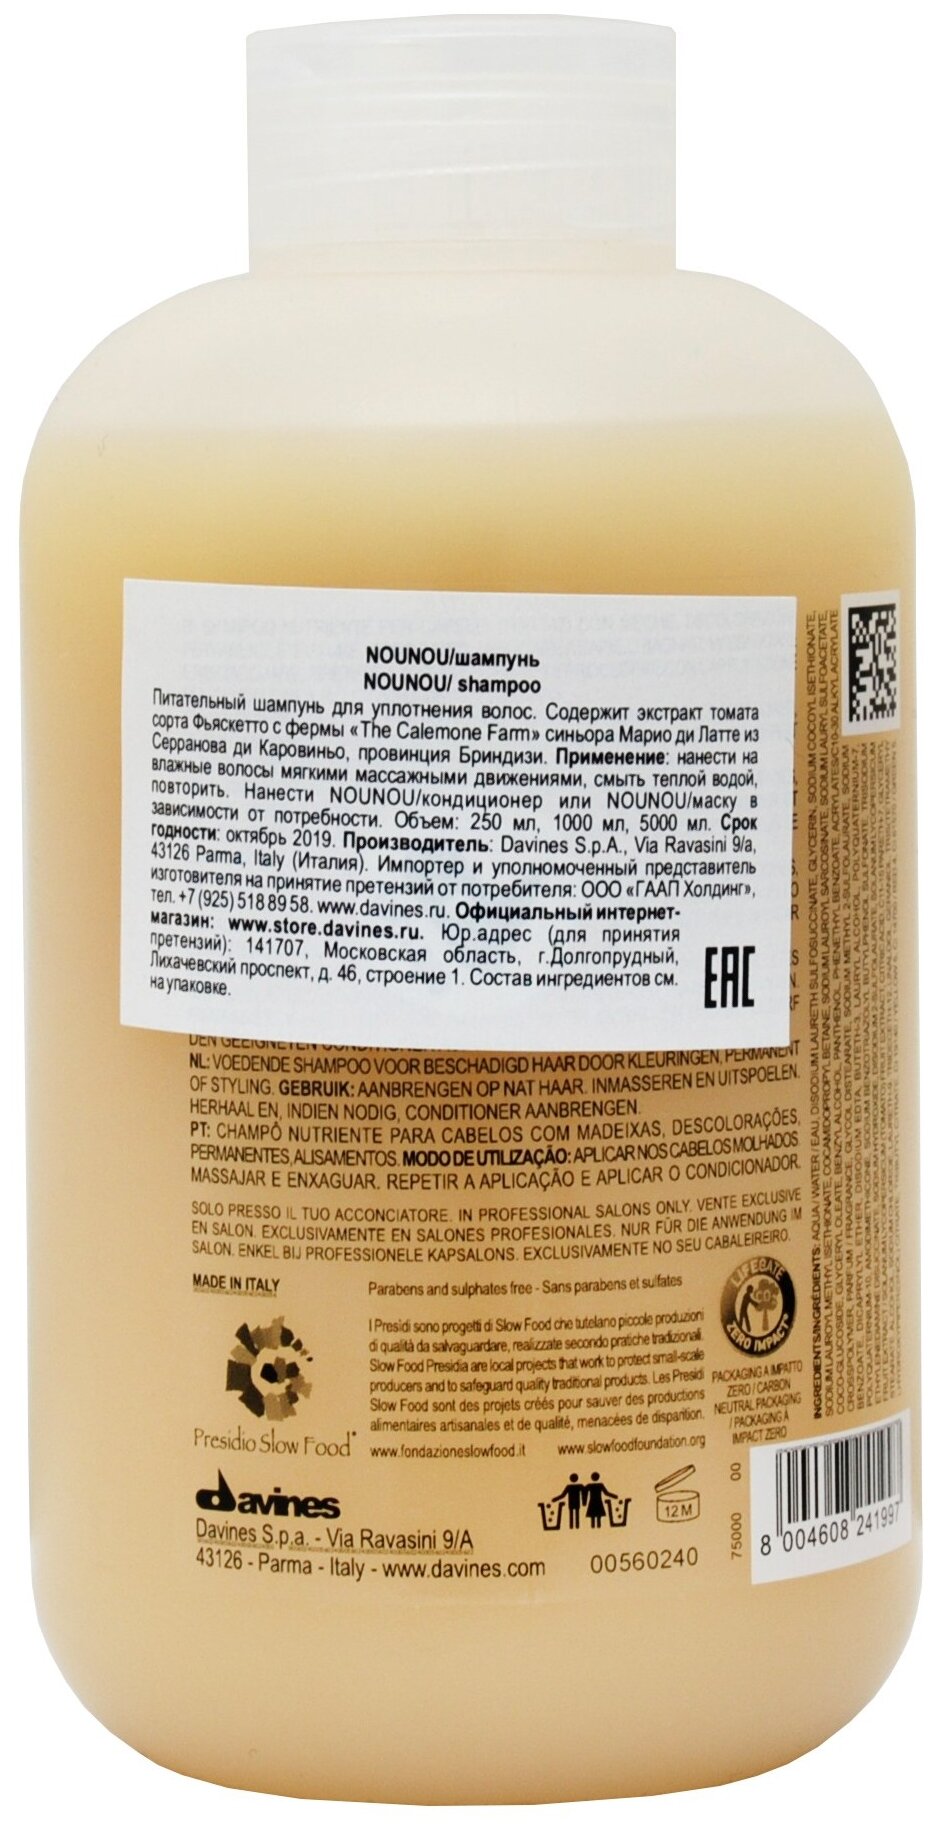 Davines NOUNOU shampoo Питательный шампунь для уплотнения волос, 250 мл